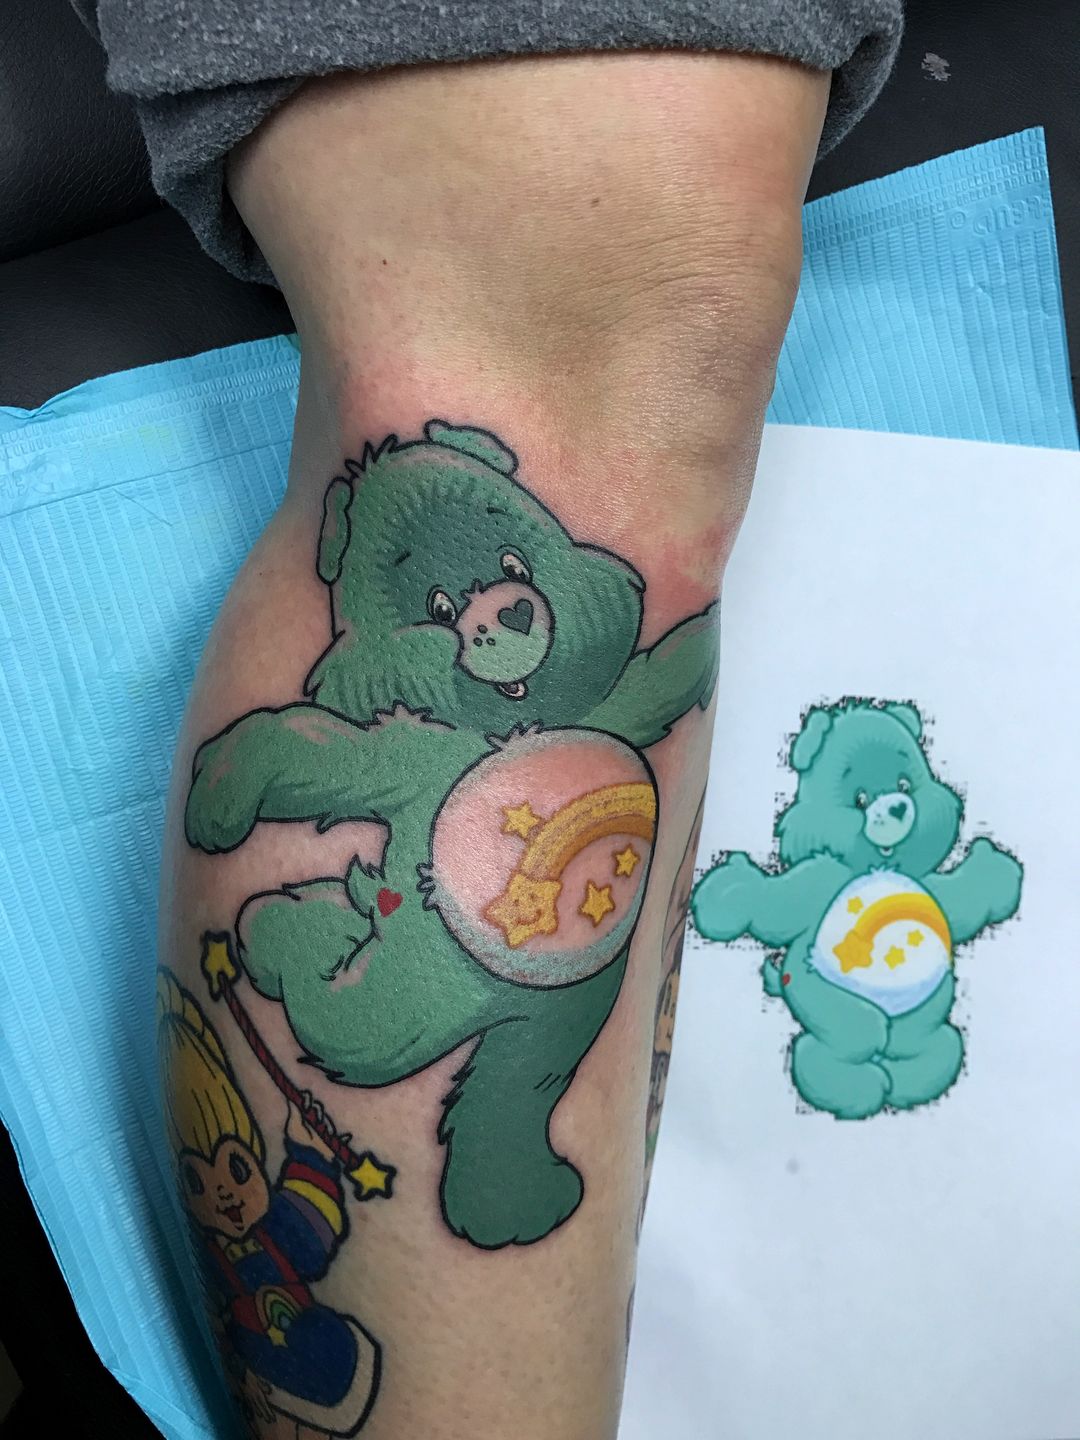 Grumpy Bear Tattoo by WizzlesBear on DeviantArt